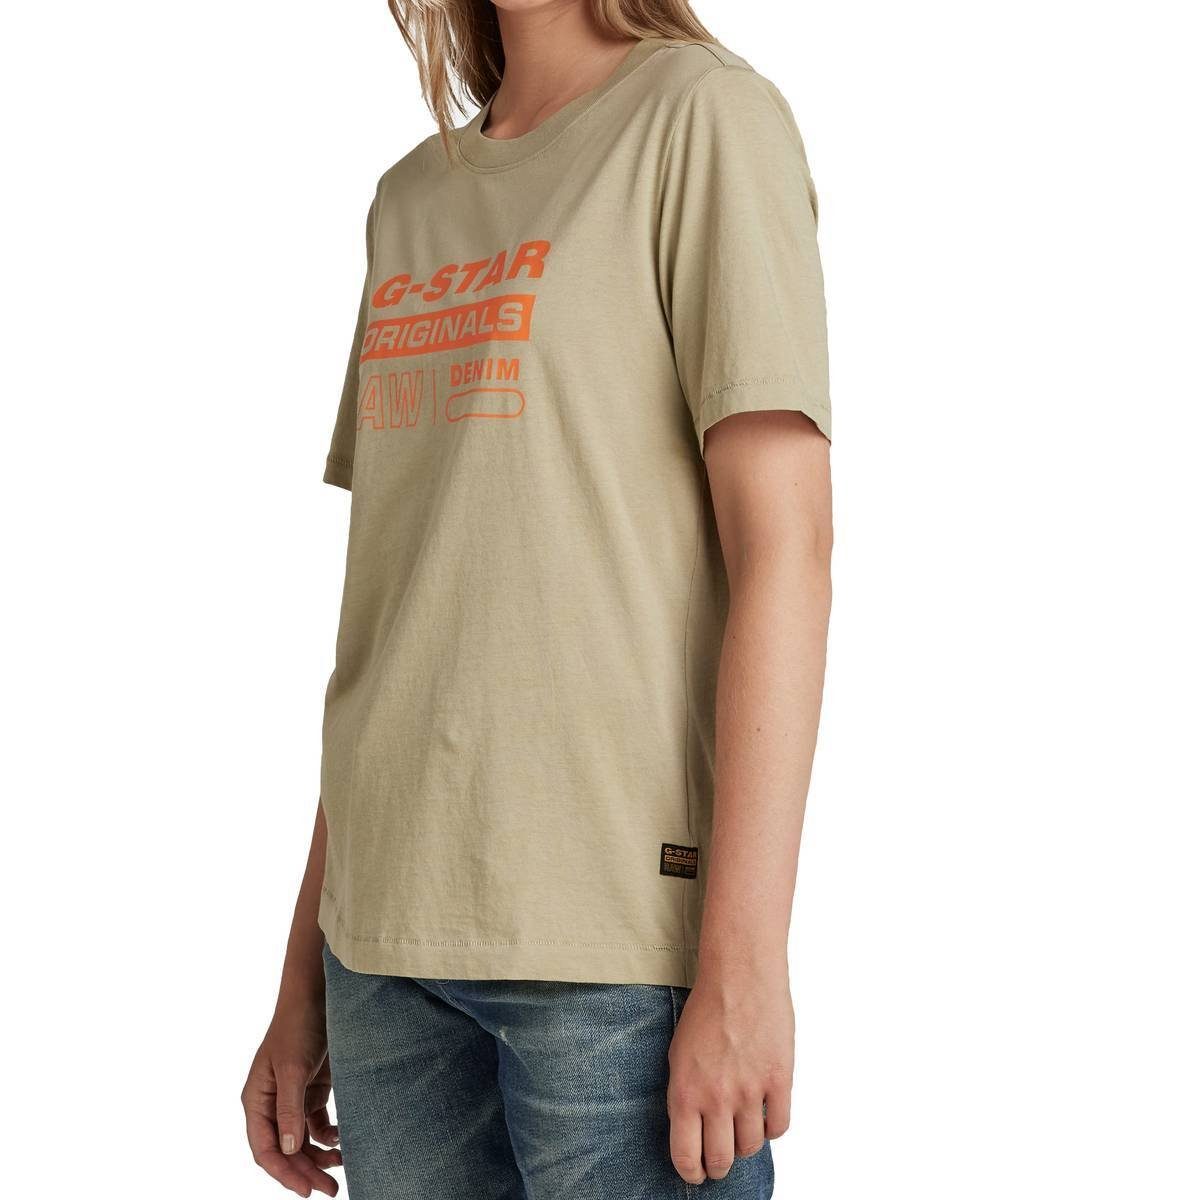 Damen T-Shirt Moos) Label Grün Regular G-Star RAW Originals (lt - Fit T-Shirt